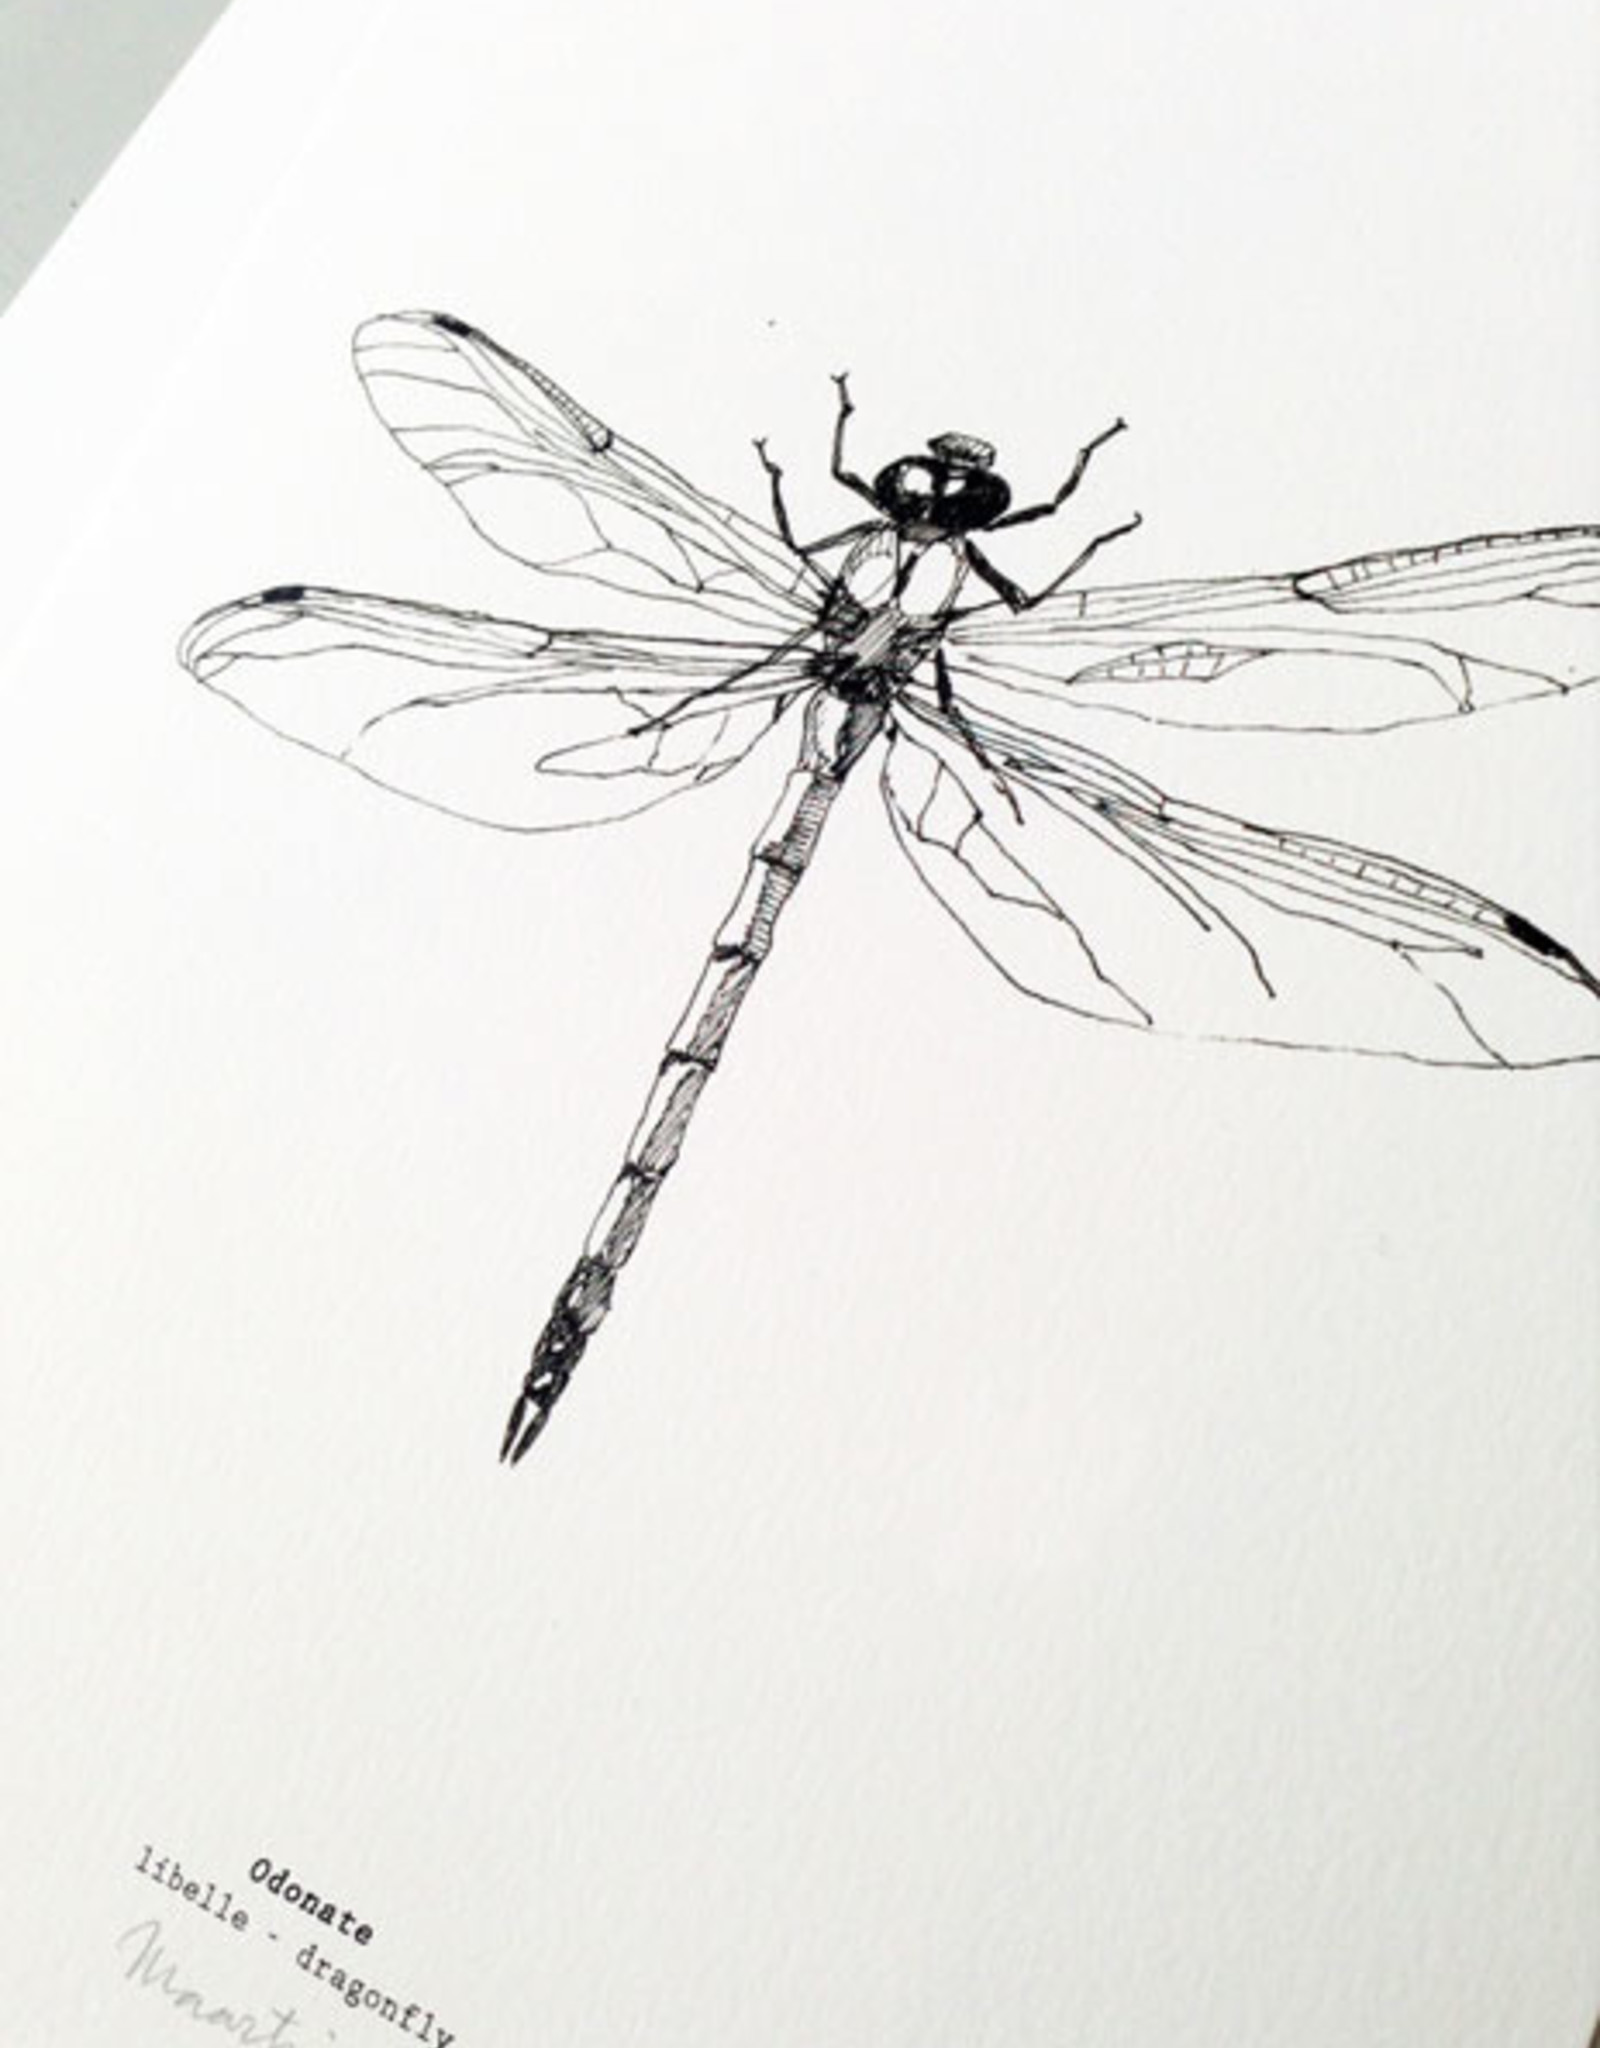 Maartje van den Noort "Dragonfly" artprint A4